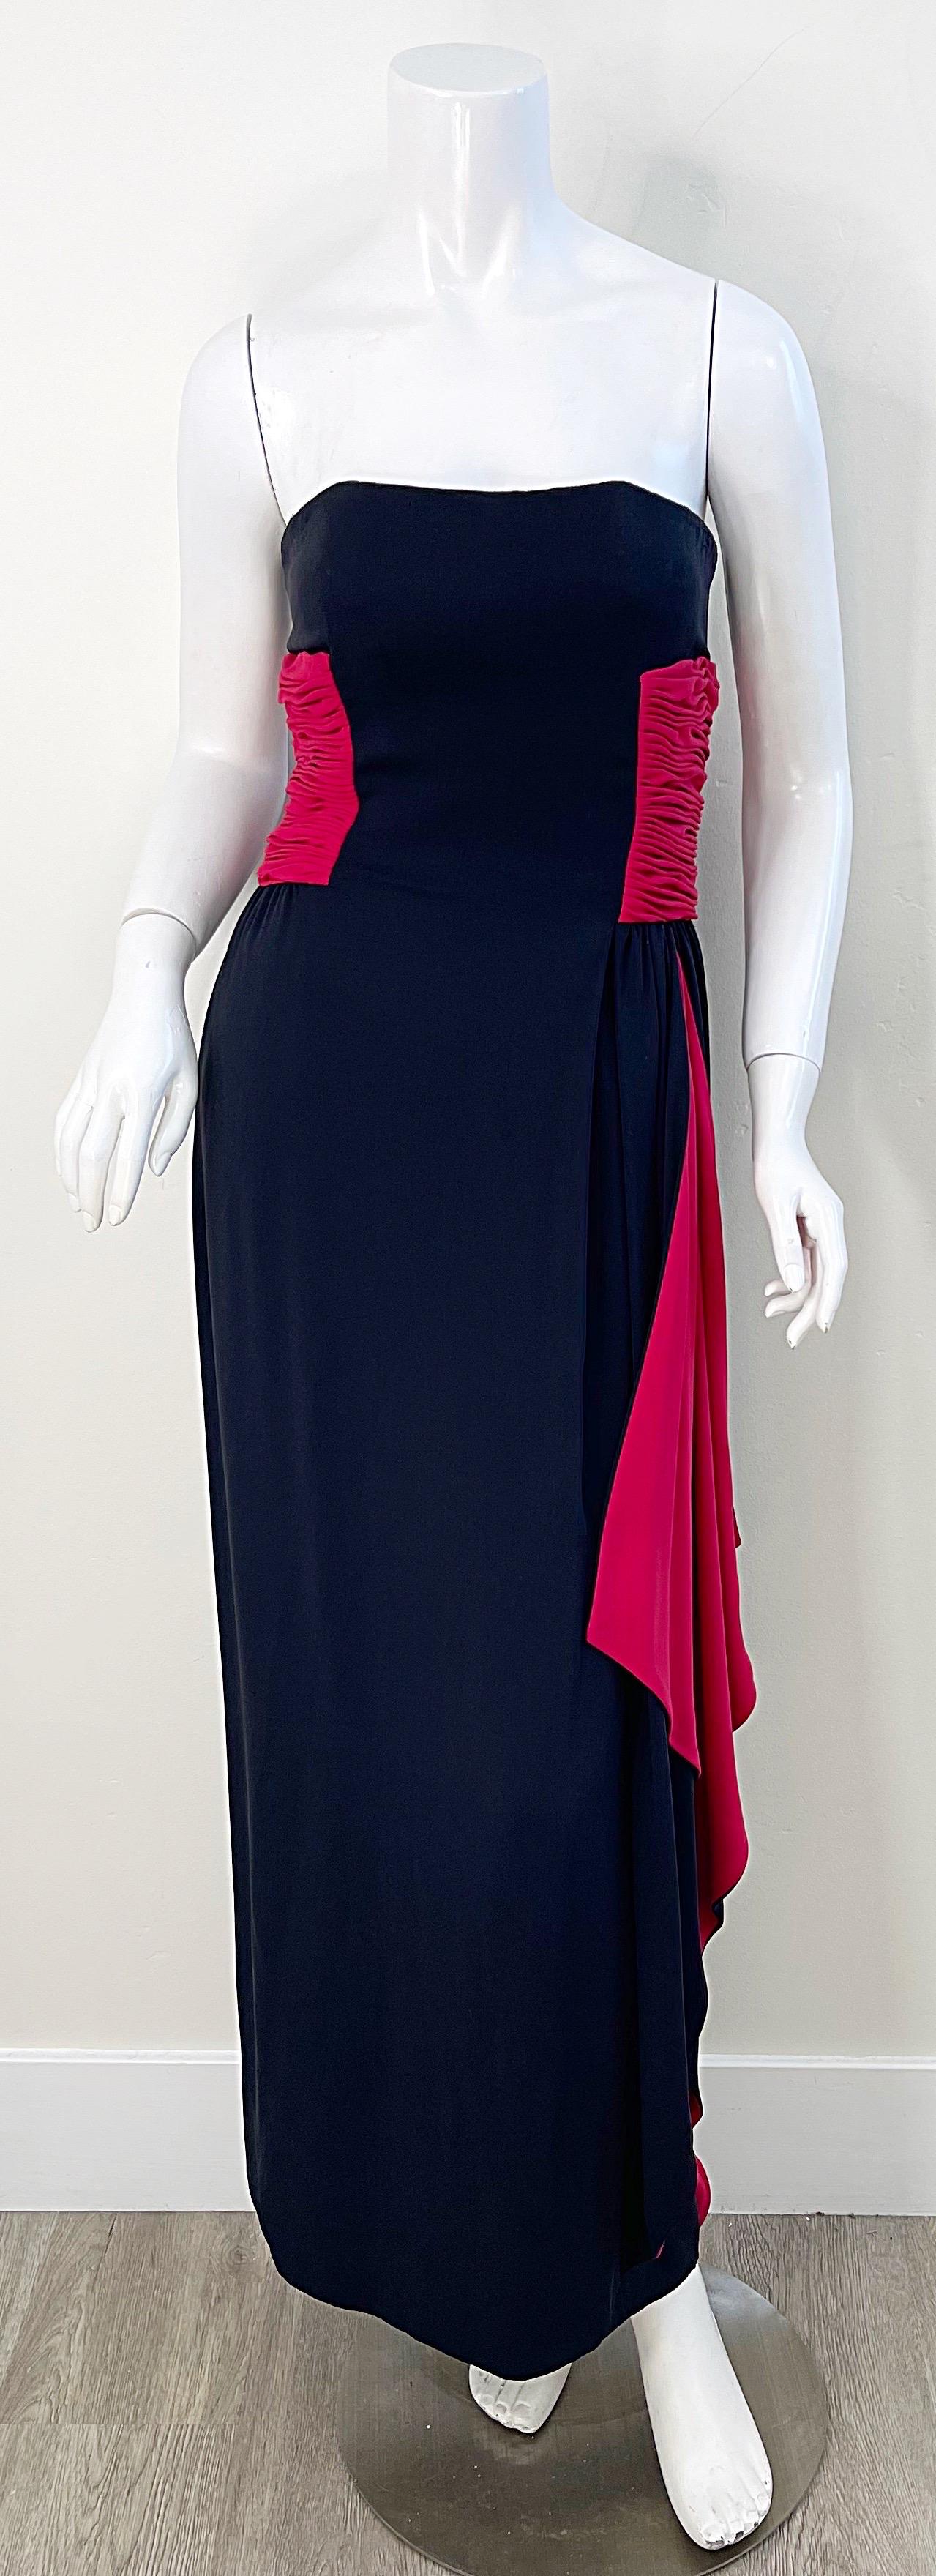 Magnifique et intemporelle robe du soir bustier noire et rouge en jersey de soie VALENTINO des années 1980 ! Cette robe porte une telle attention aux détails. Un corset à os est intégré à l'intérieur pour maintenir le tout en place. Des accents